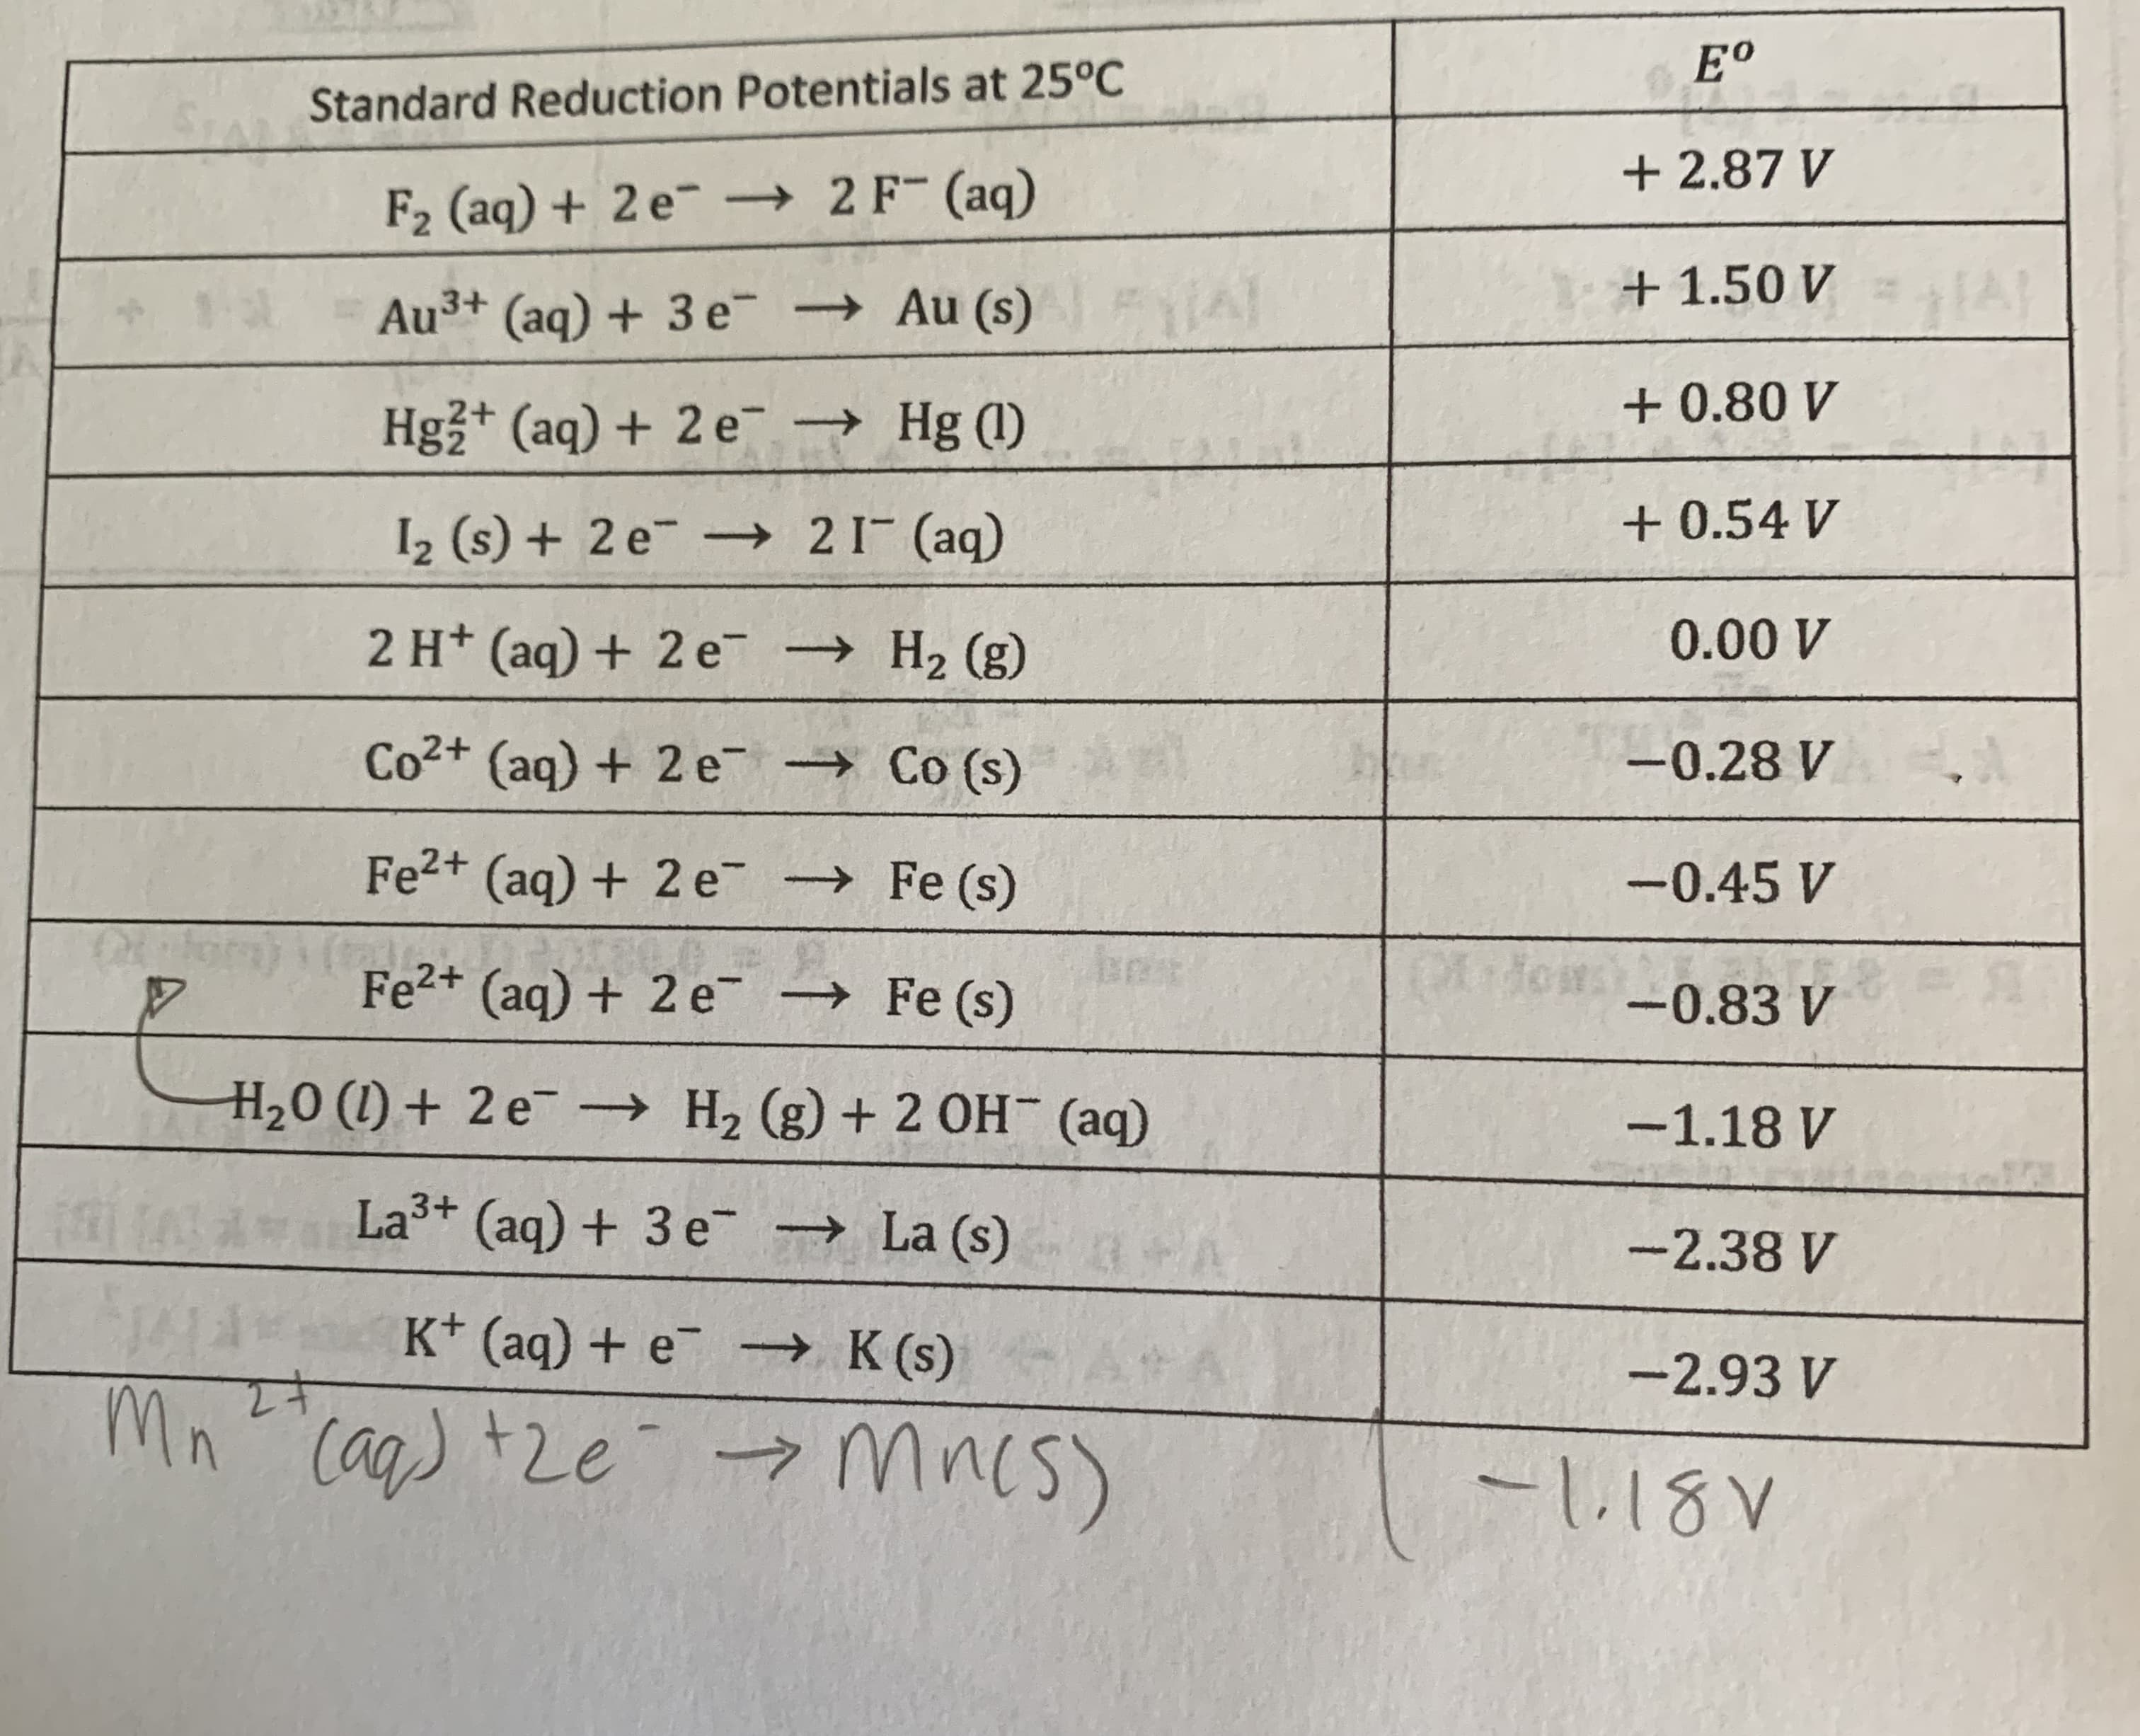 E°
Standard Reduction Potentials at 25°C
+ 2.87 V
F2 (aq) + 2 e¯ → 2F (aq)
+1.50 V
Au3+ (aq) + 3 e → Au (s)
Hgz+ (aq) + 2 e
Hg (1)
+ 0.80 V
I2 (s) + 2 e¯ → 21- (aq)
+ 0.54 V
2 H+ (aq) + 2e → H2 (g)
0.00 V
Co2+ (aq) + 2 e Co (s)
-0.28 V
Fe2+ (aq) + 2e-
→ Fe (s)
-0.45 V
Fe2+ (ag) + 2 e¯ → Fe (s)
-0.83 V
H,0 (1) + 2 e→ H2 (g) + 2 OH¯ (aq)
-1.18 V
La3+ (aq) + 3 e
→ La (s)
-2.38 V
K* (aq) + e → K(s)
-2.93 V
Cag) +2e mncs
-118V
